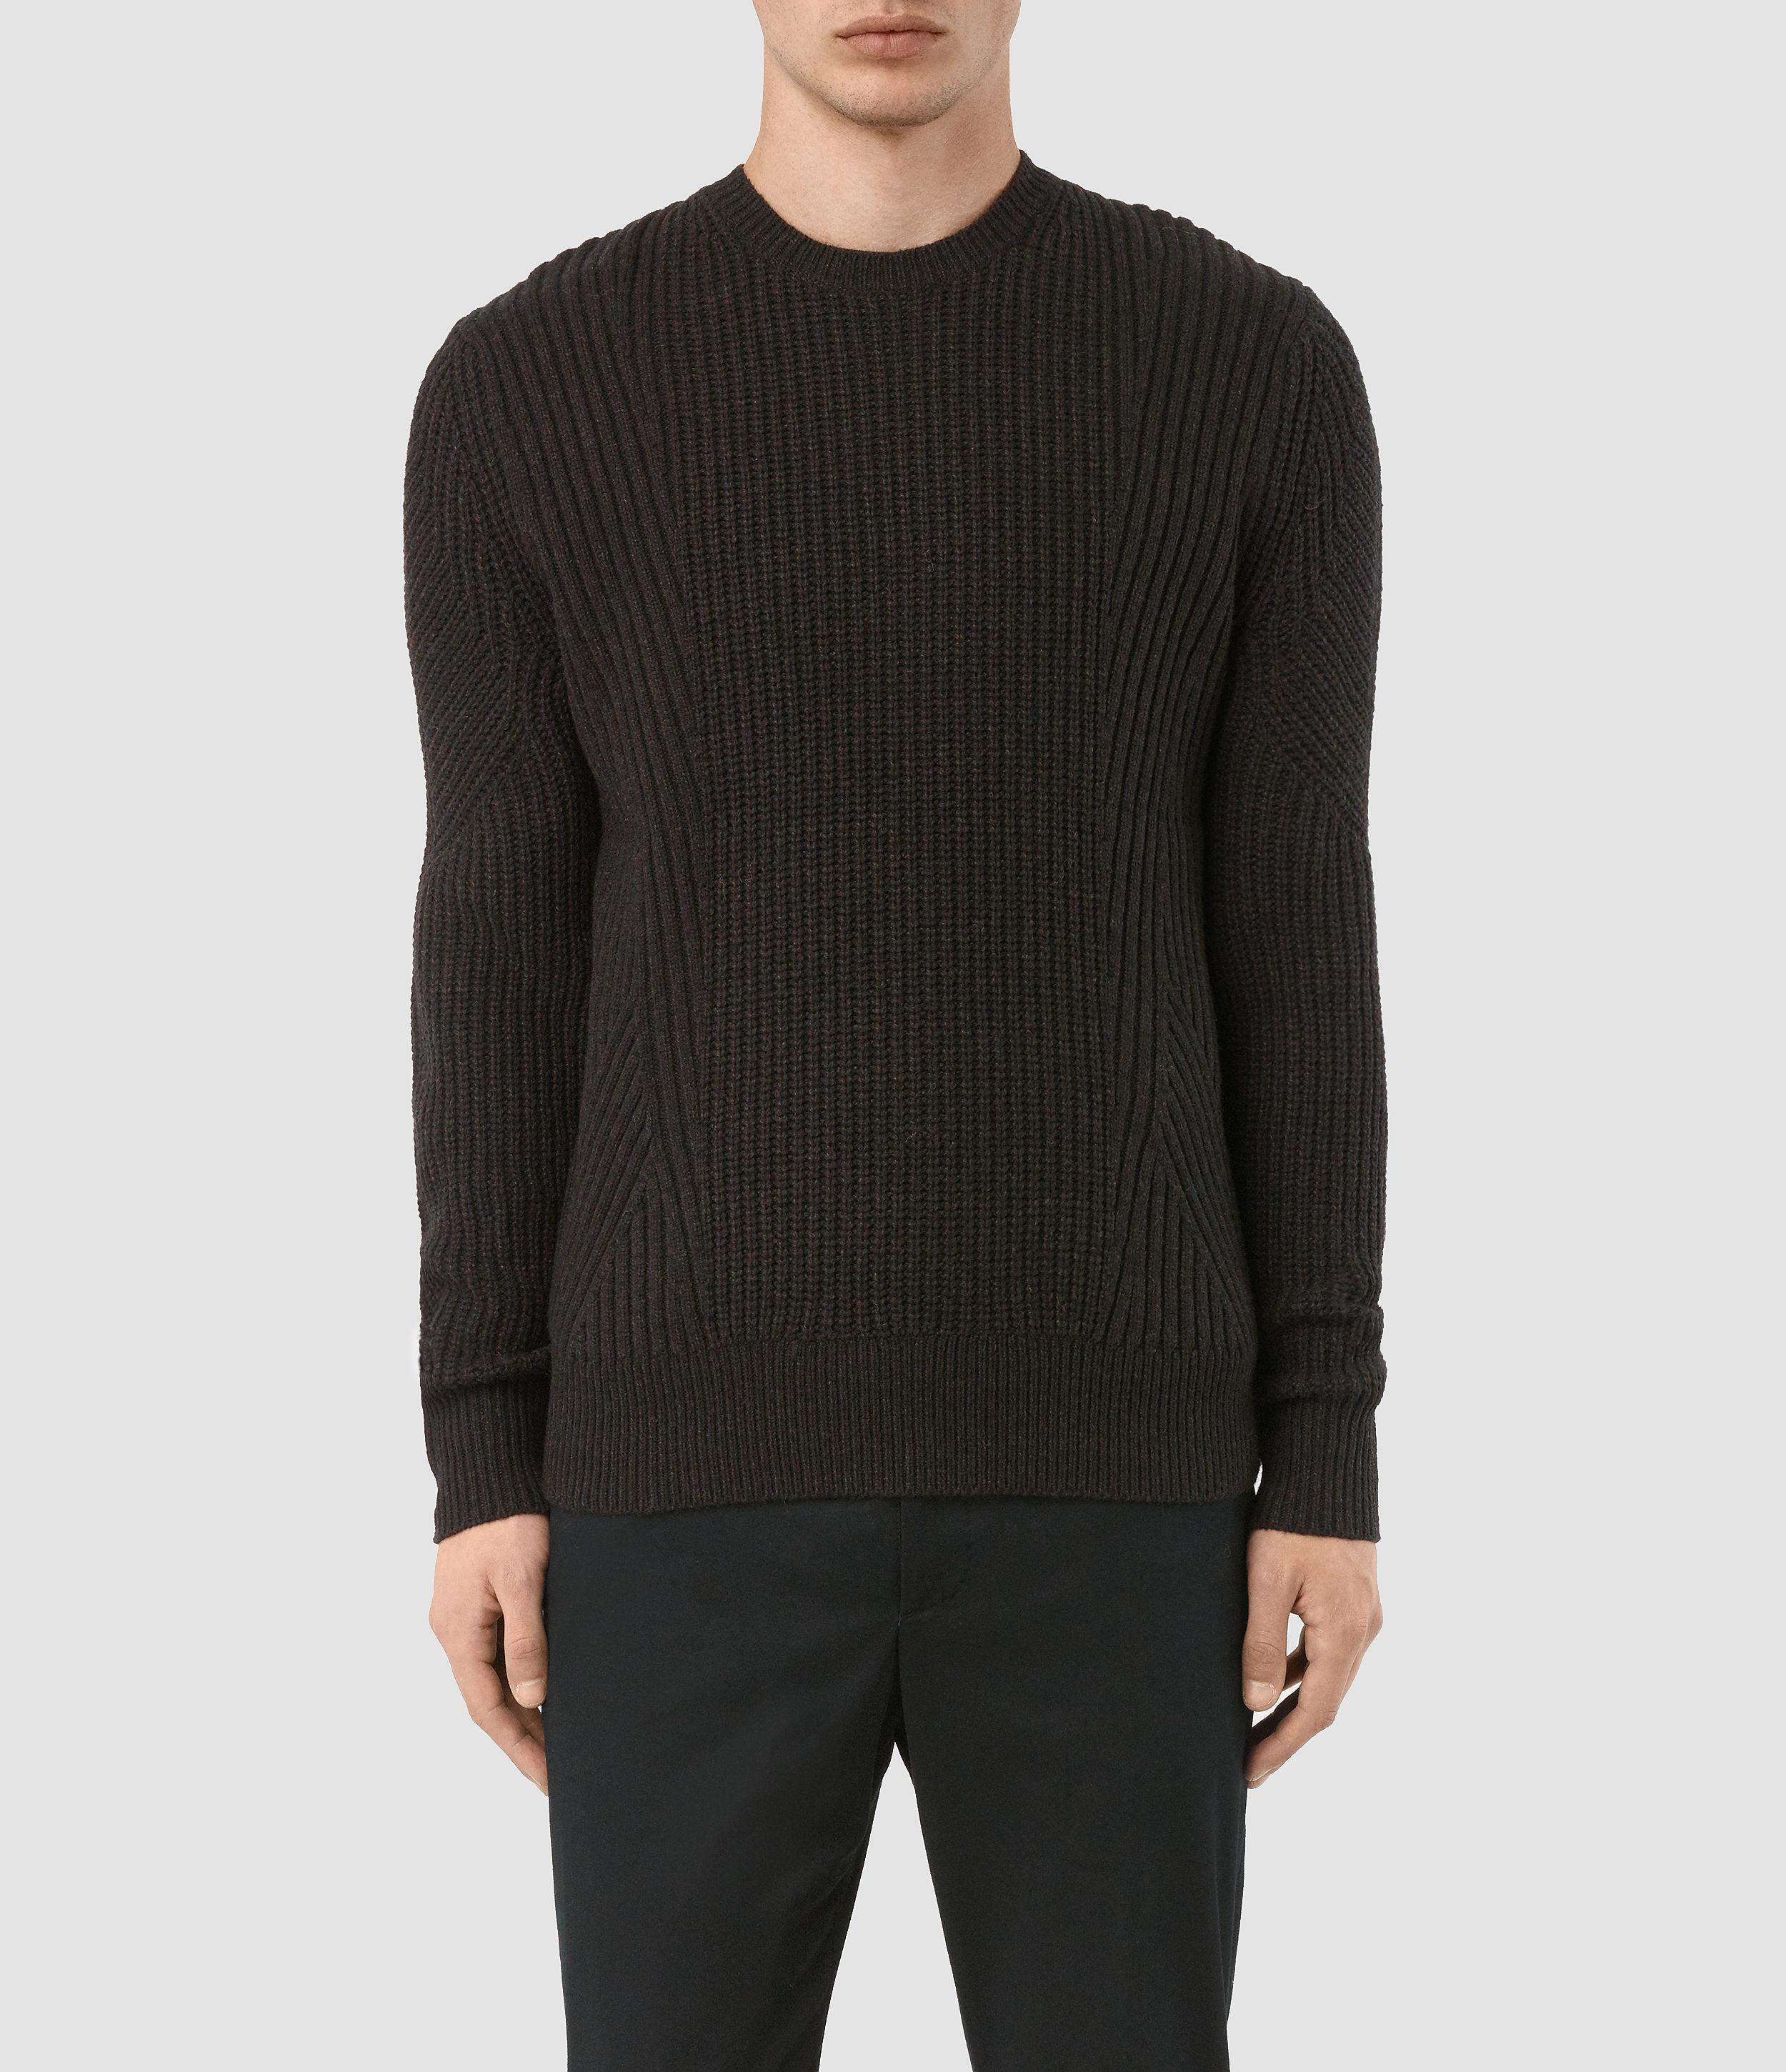 AllSaints Wool Hiren Crew Sweater in Black for Men - Lyst